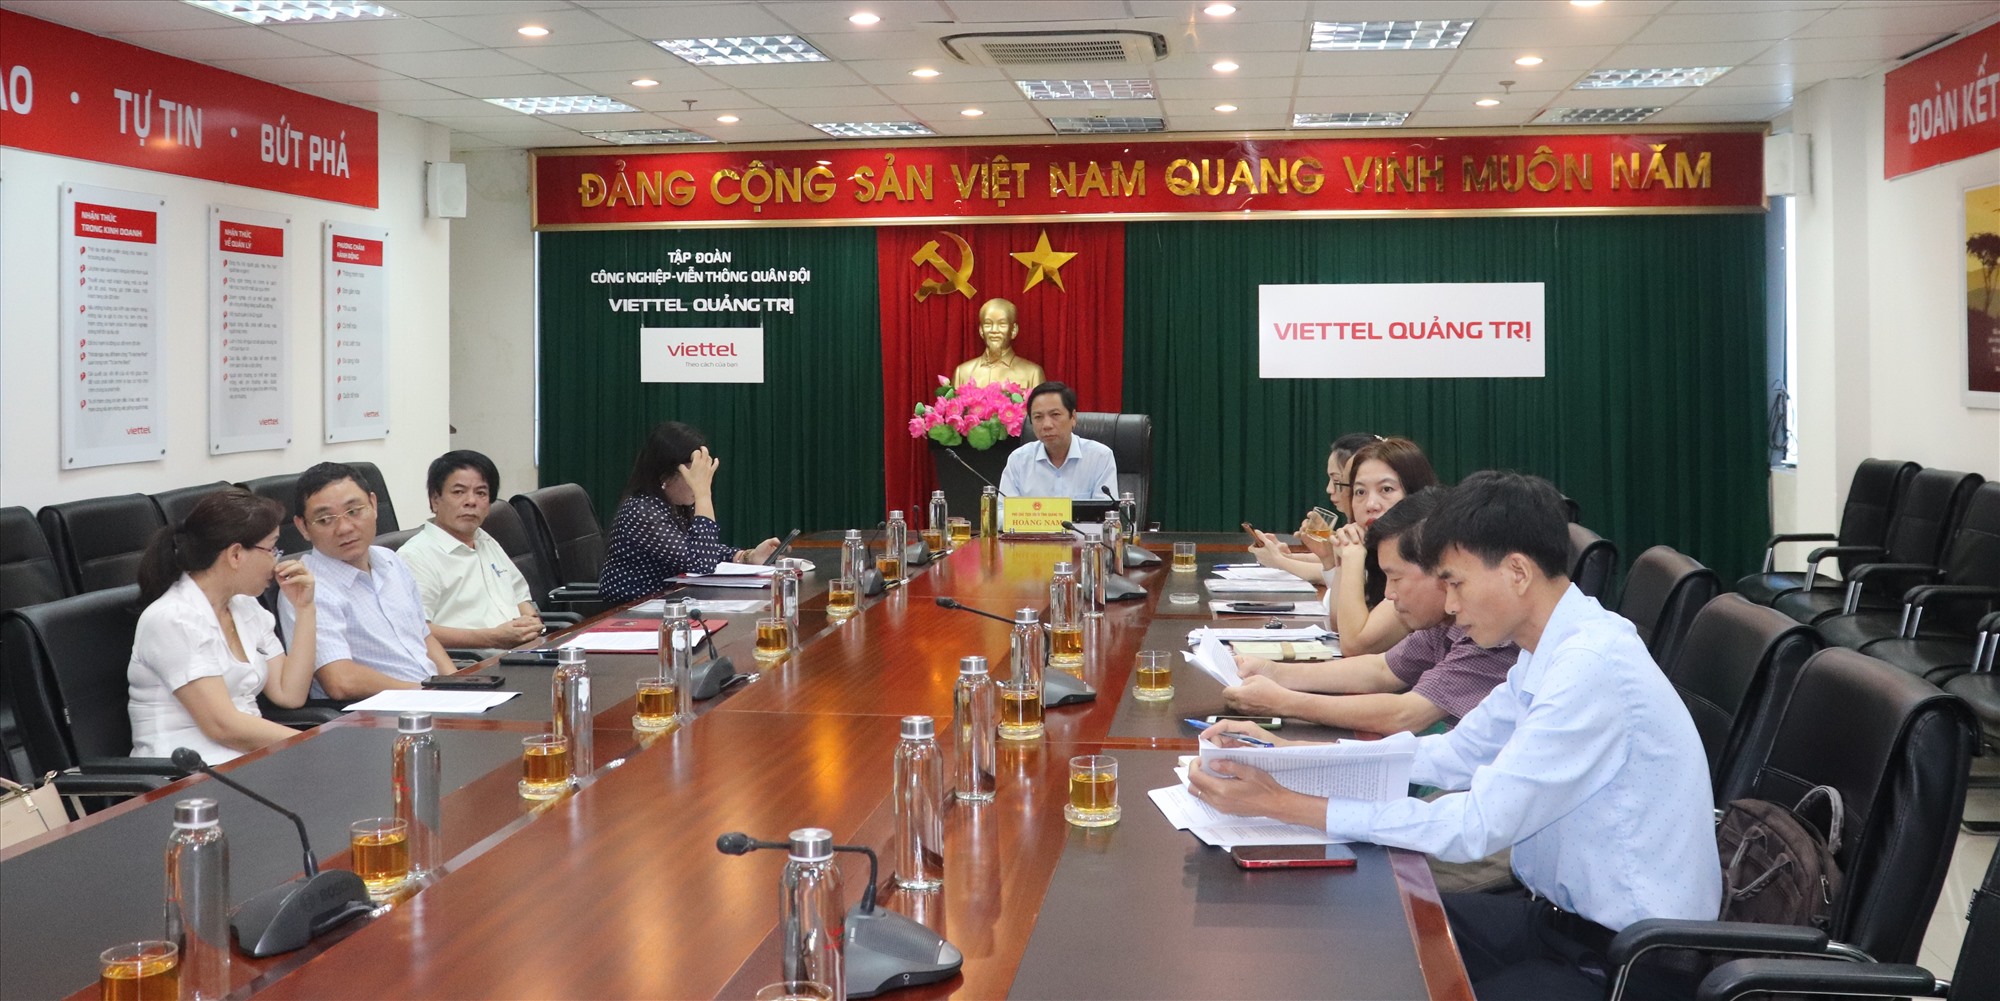 Phó Chủ tịch UBND tỉnh Hoàng Nam tham dự hội nghị tại điểm cầu Quảng Trị - Ảnh: T.P